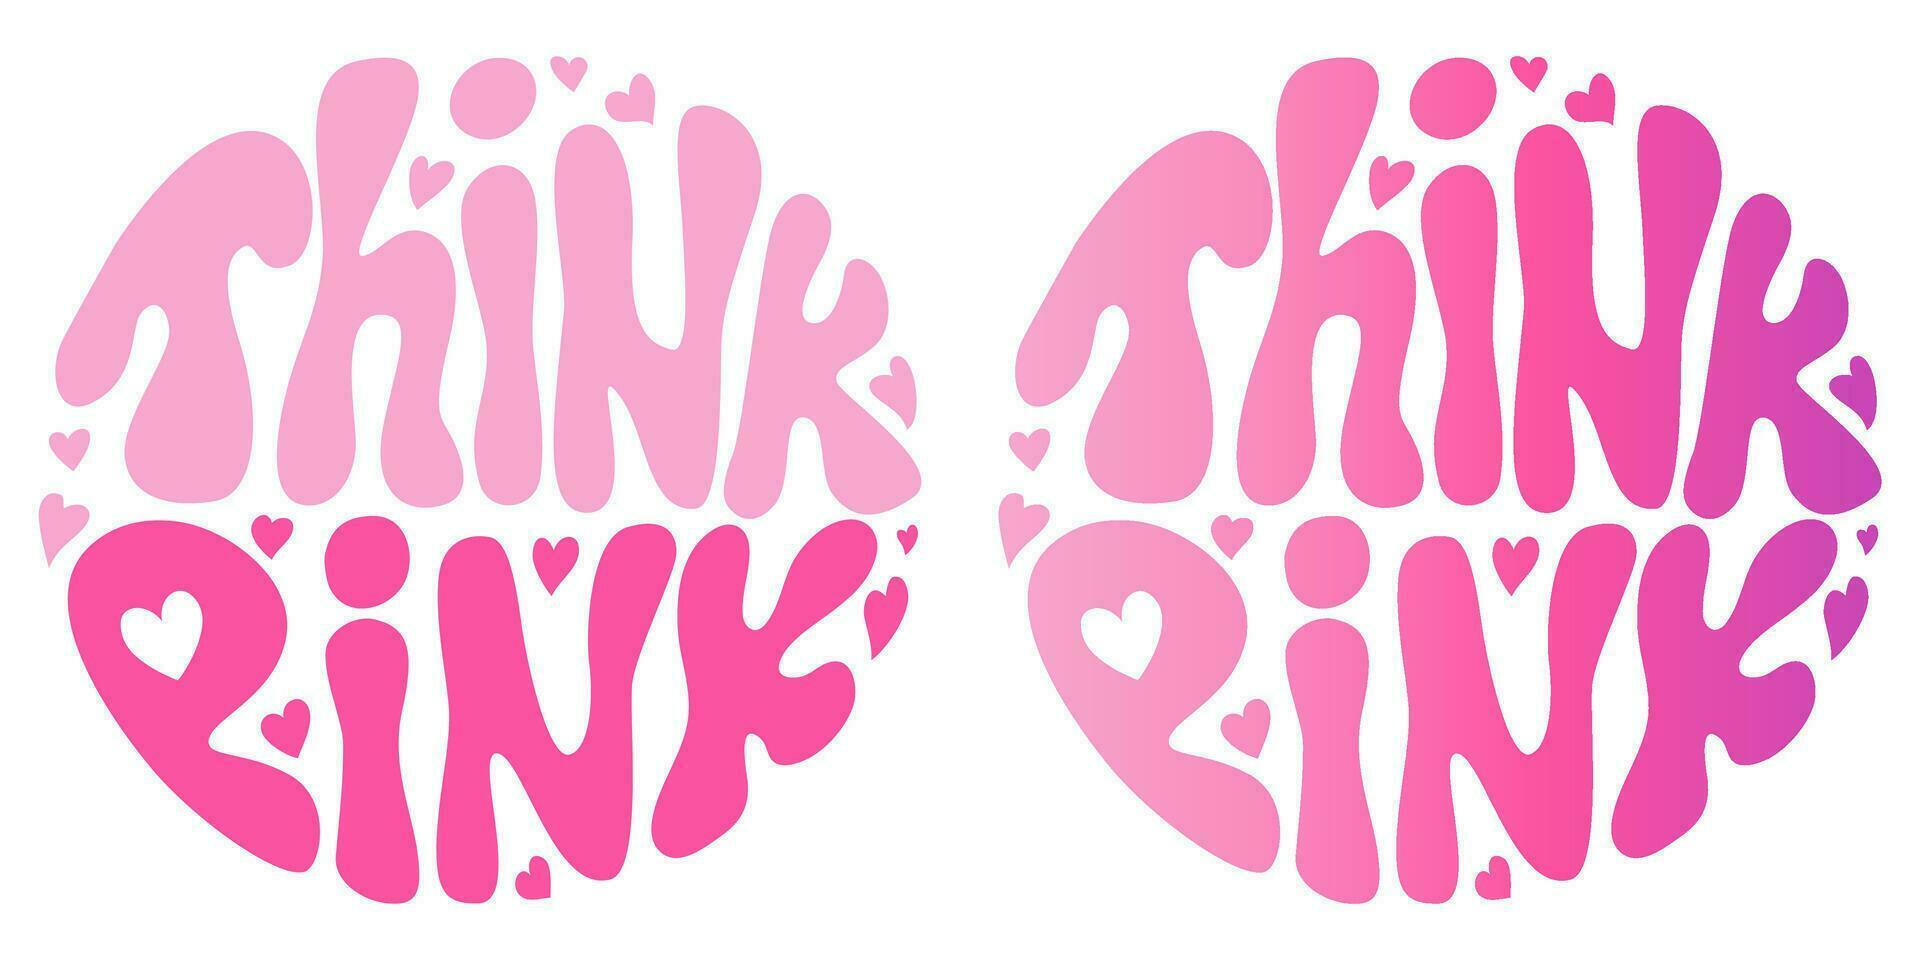 handgeschrieben retro groovig Beschriftung denken Rosa mit Herzen. ästhetisch 2000er Stil. Pinkcore. Slogan im runden Form. modisch groovig drucken Design zum Poster, Karten, T-Shirts. vektor